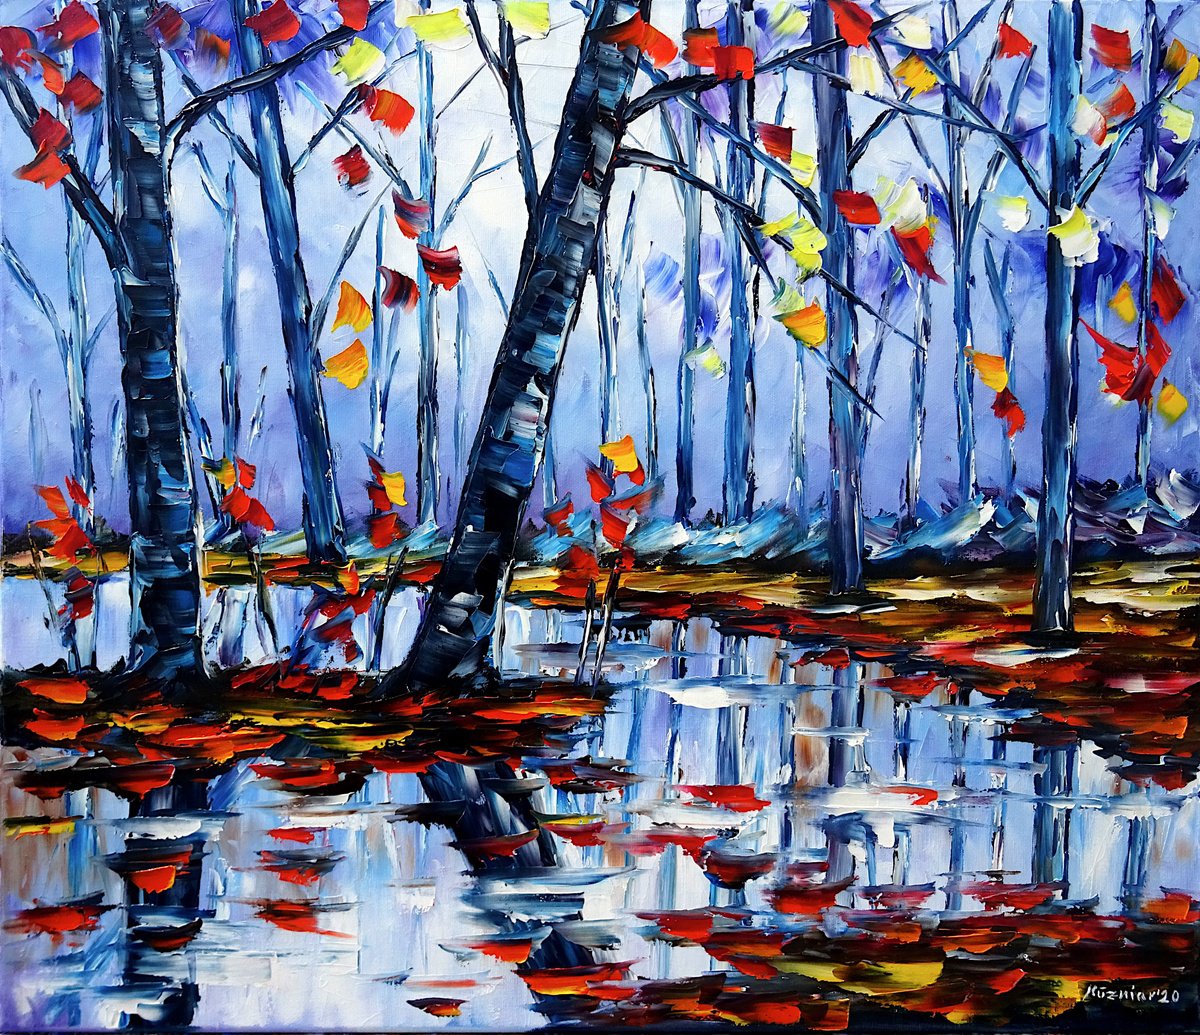 Autumn by the river by Mirek Kuzniar